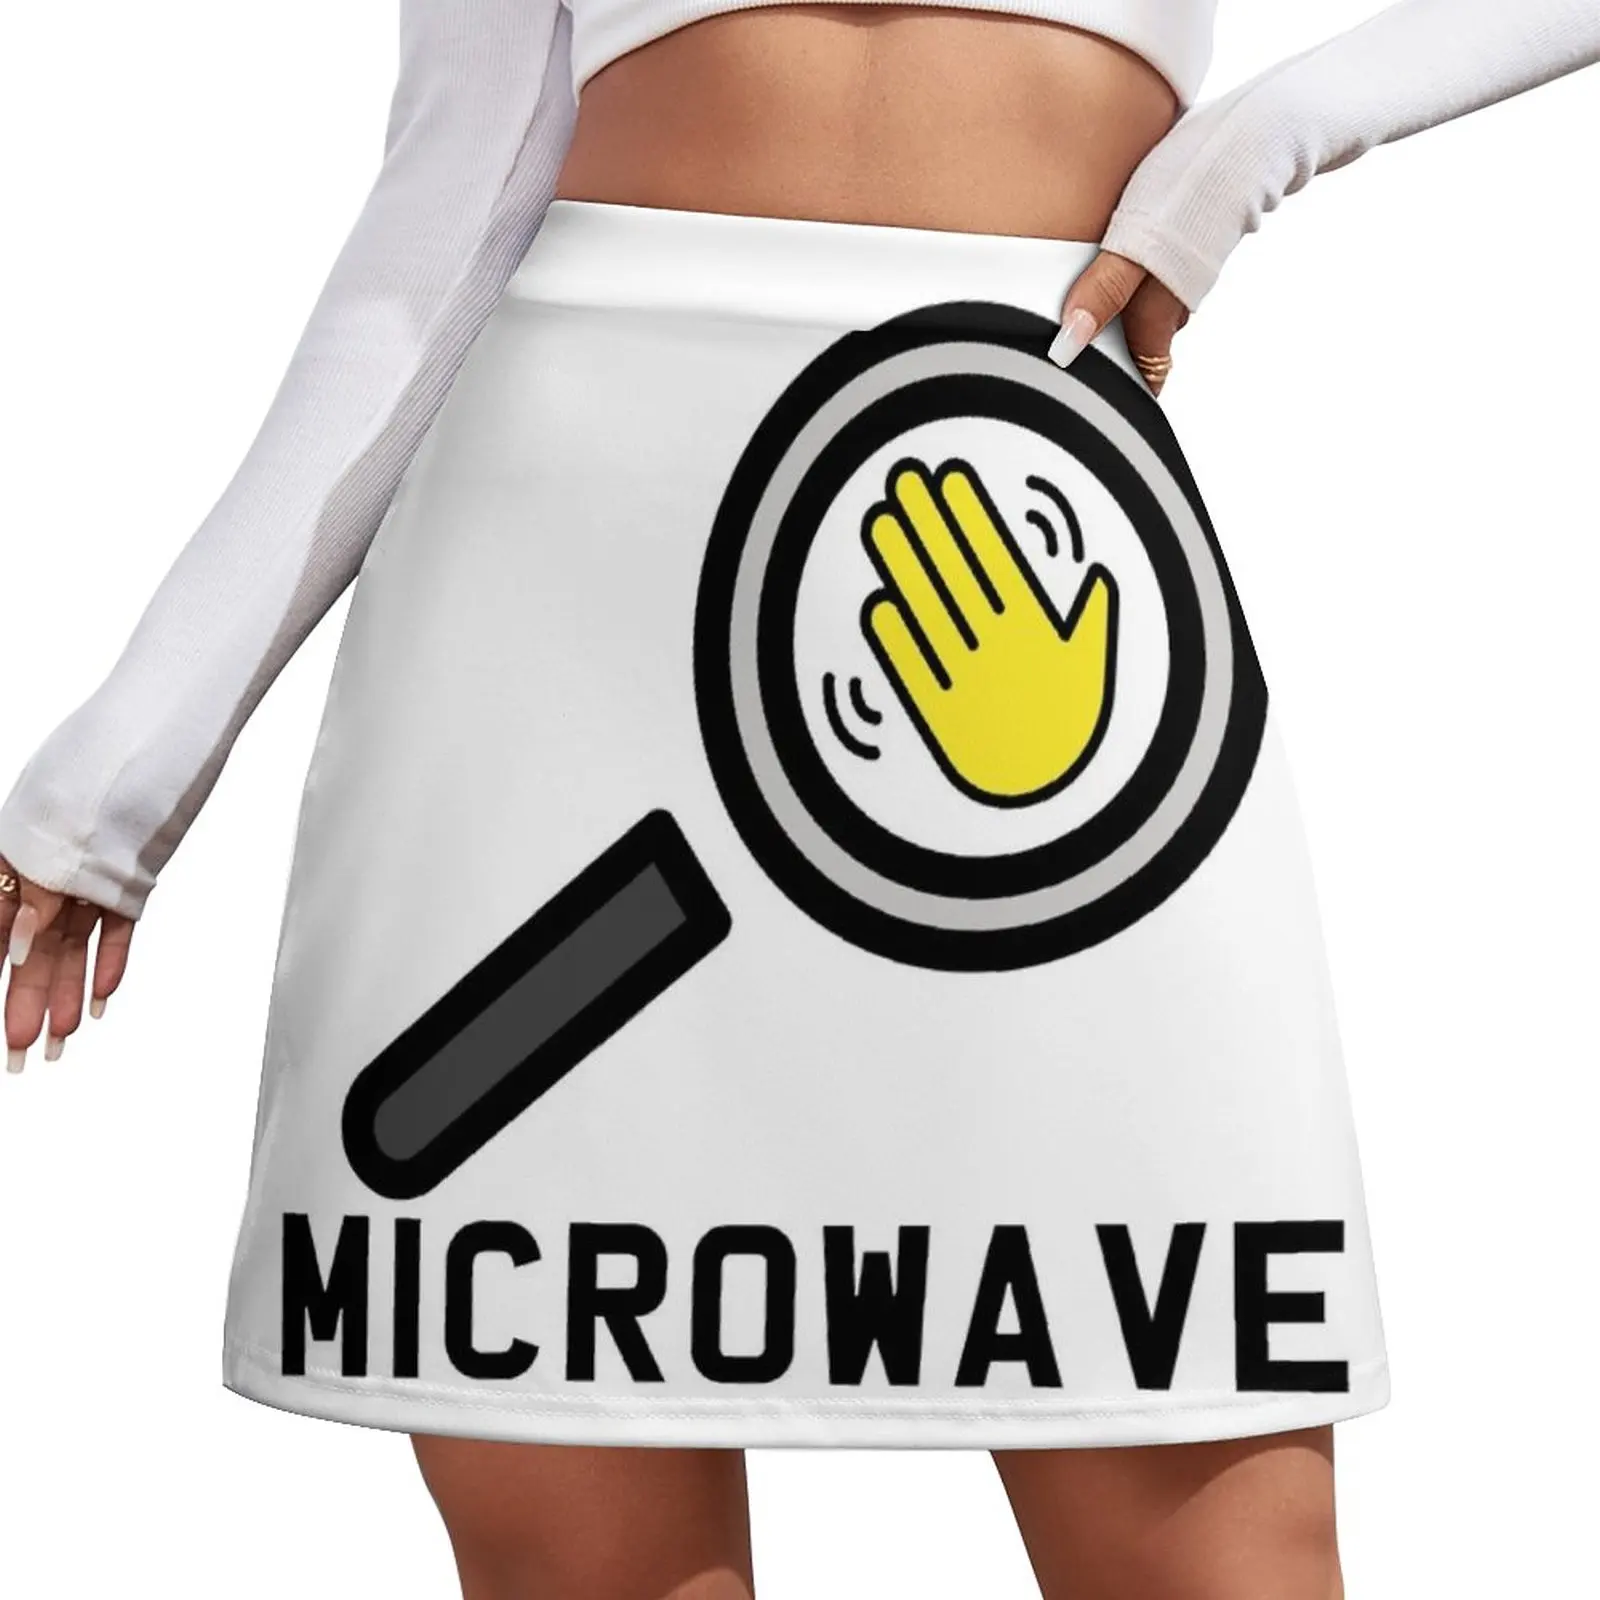 

Мини-юбка в виде микроволновой печи для женщин, шикарная и элегантная женская юбка